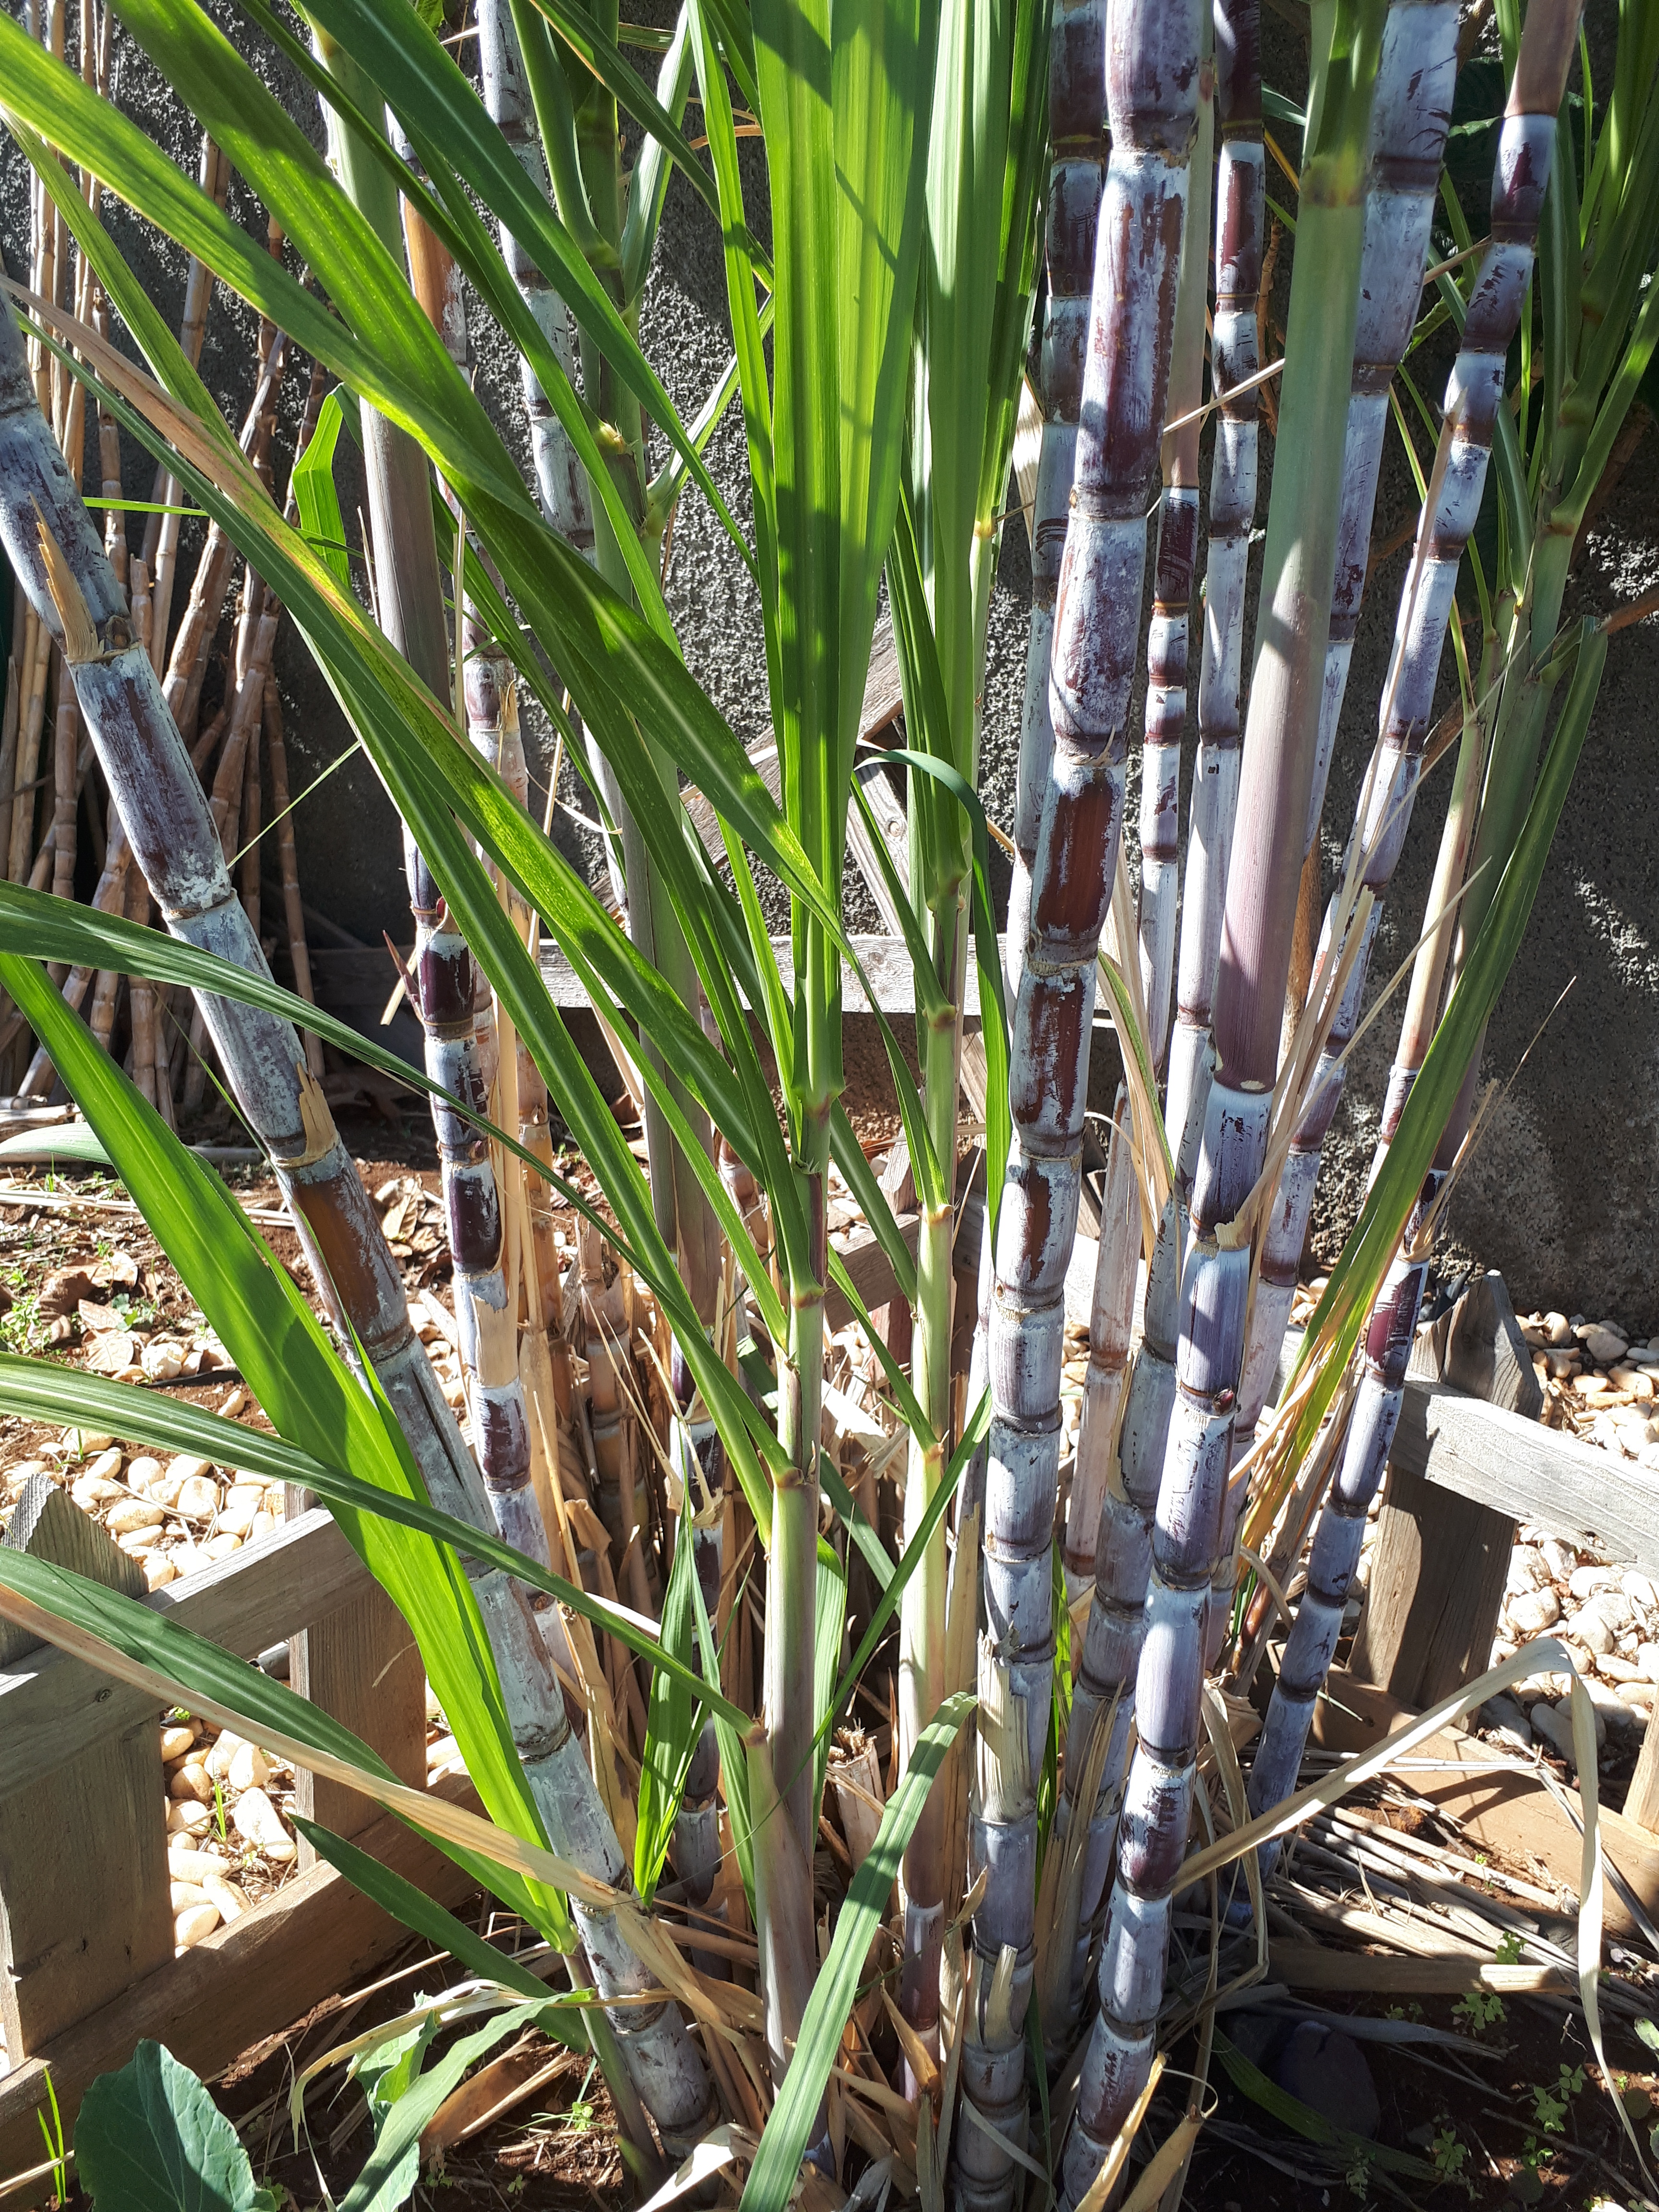 A cana de açúcar, produto dos primórdios da descoberta da Madeira. O chamado "ouro branco" da época, marca presença na nossa horta